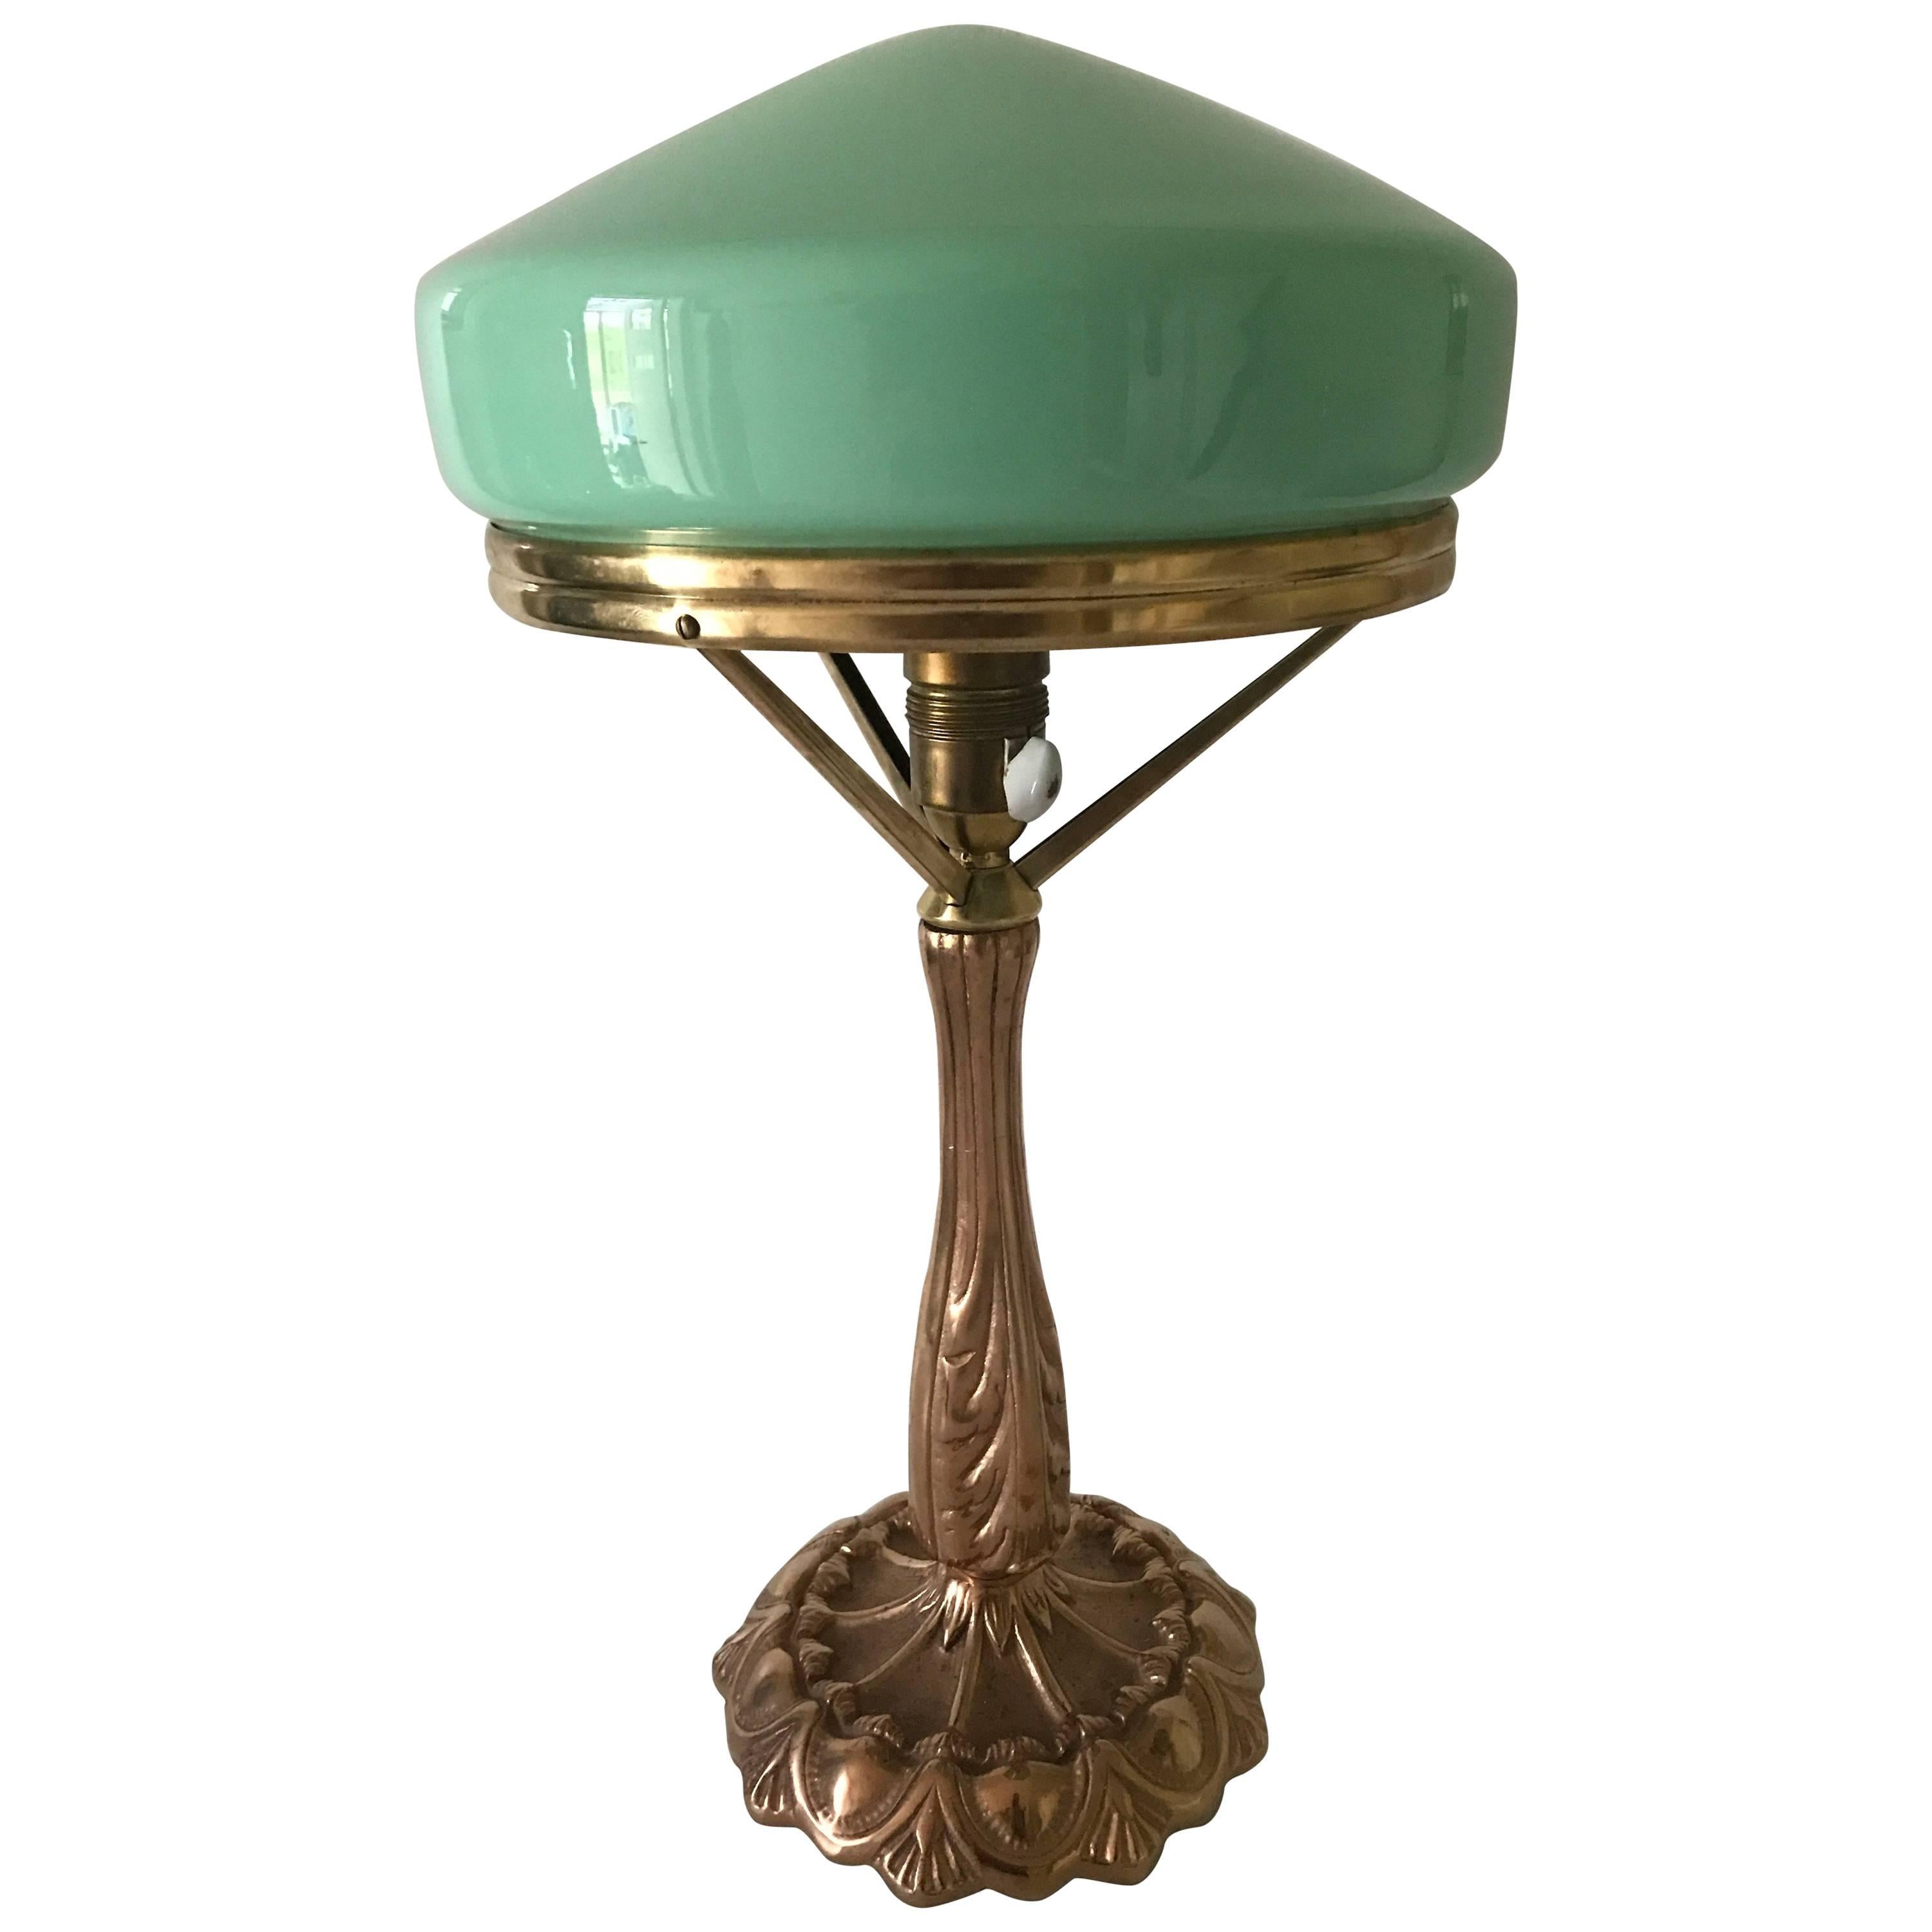 1925 Swedish Jugendstil, Art Nouveau Brass and Glass Table Lamp For Sale